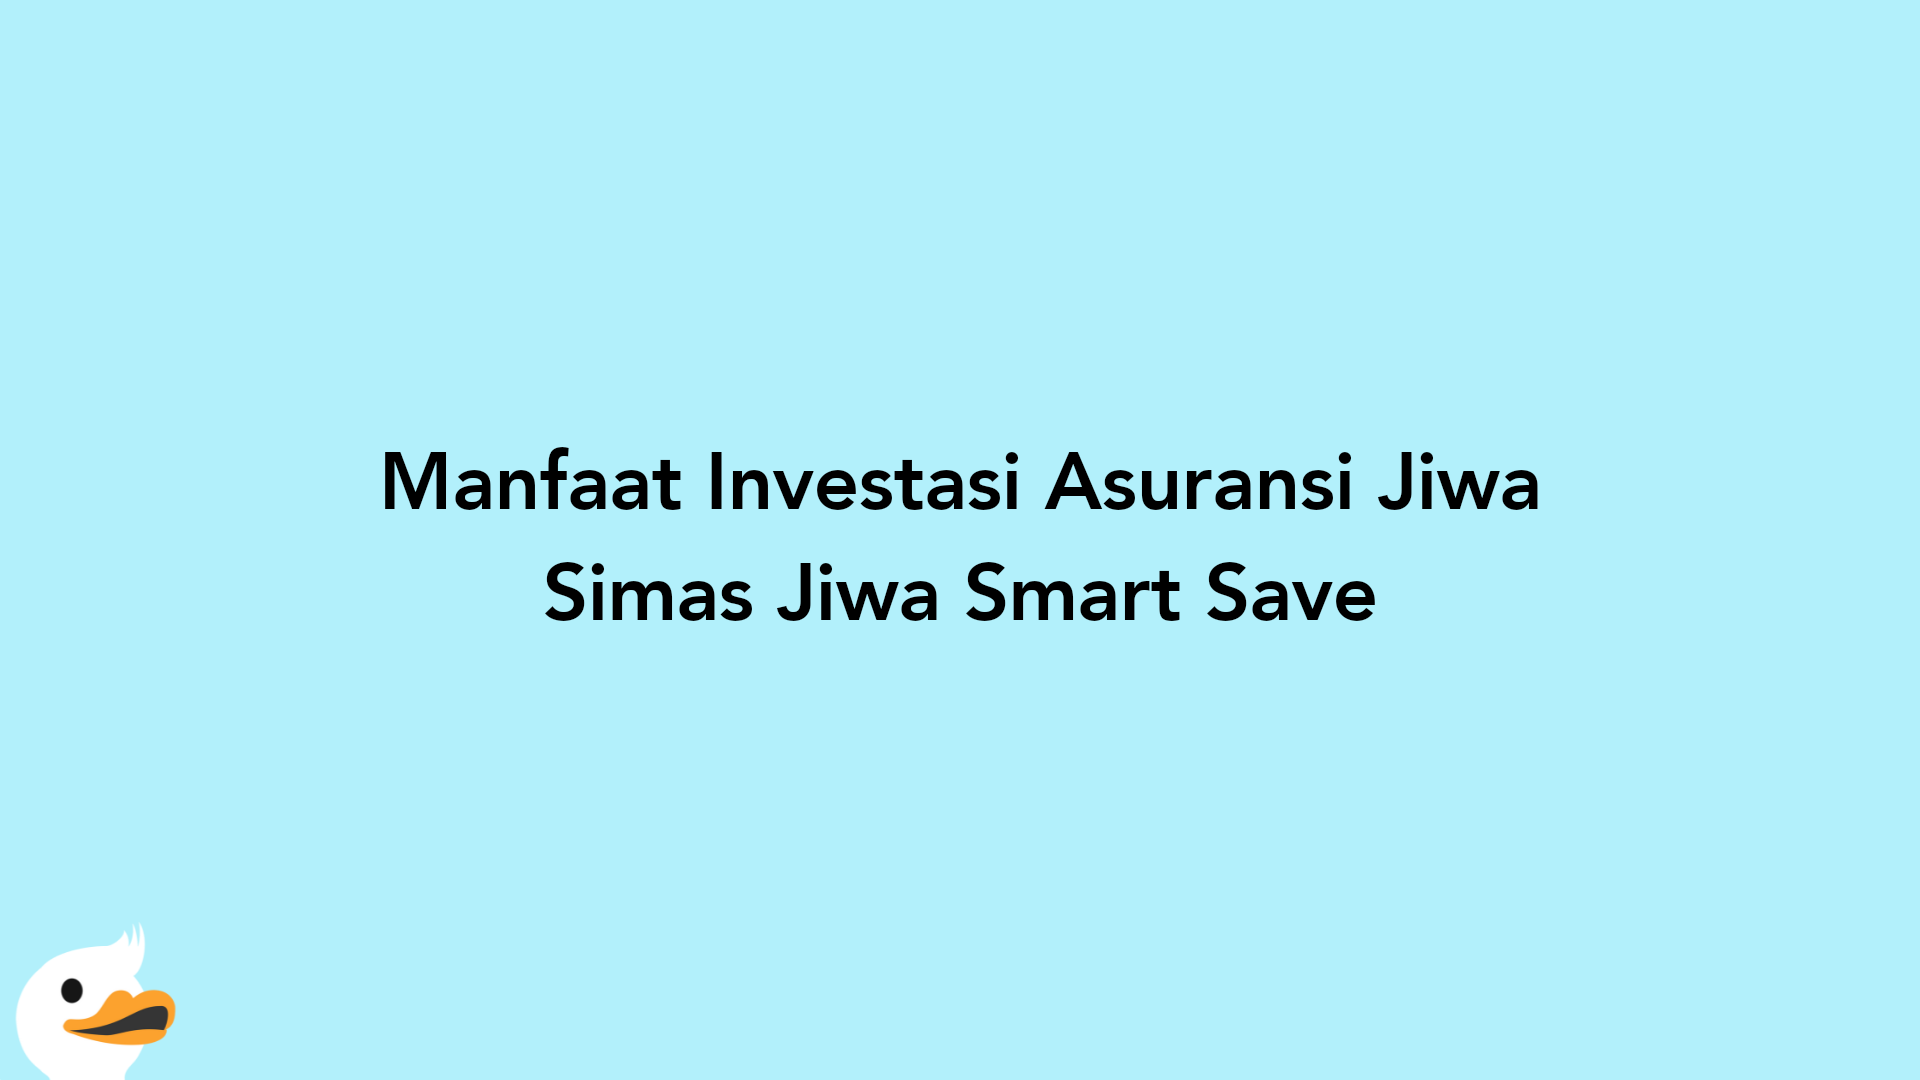 Manfaat Investasi Asuransi Jiwa Simas Jiwa Smart Save